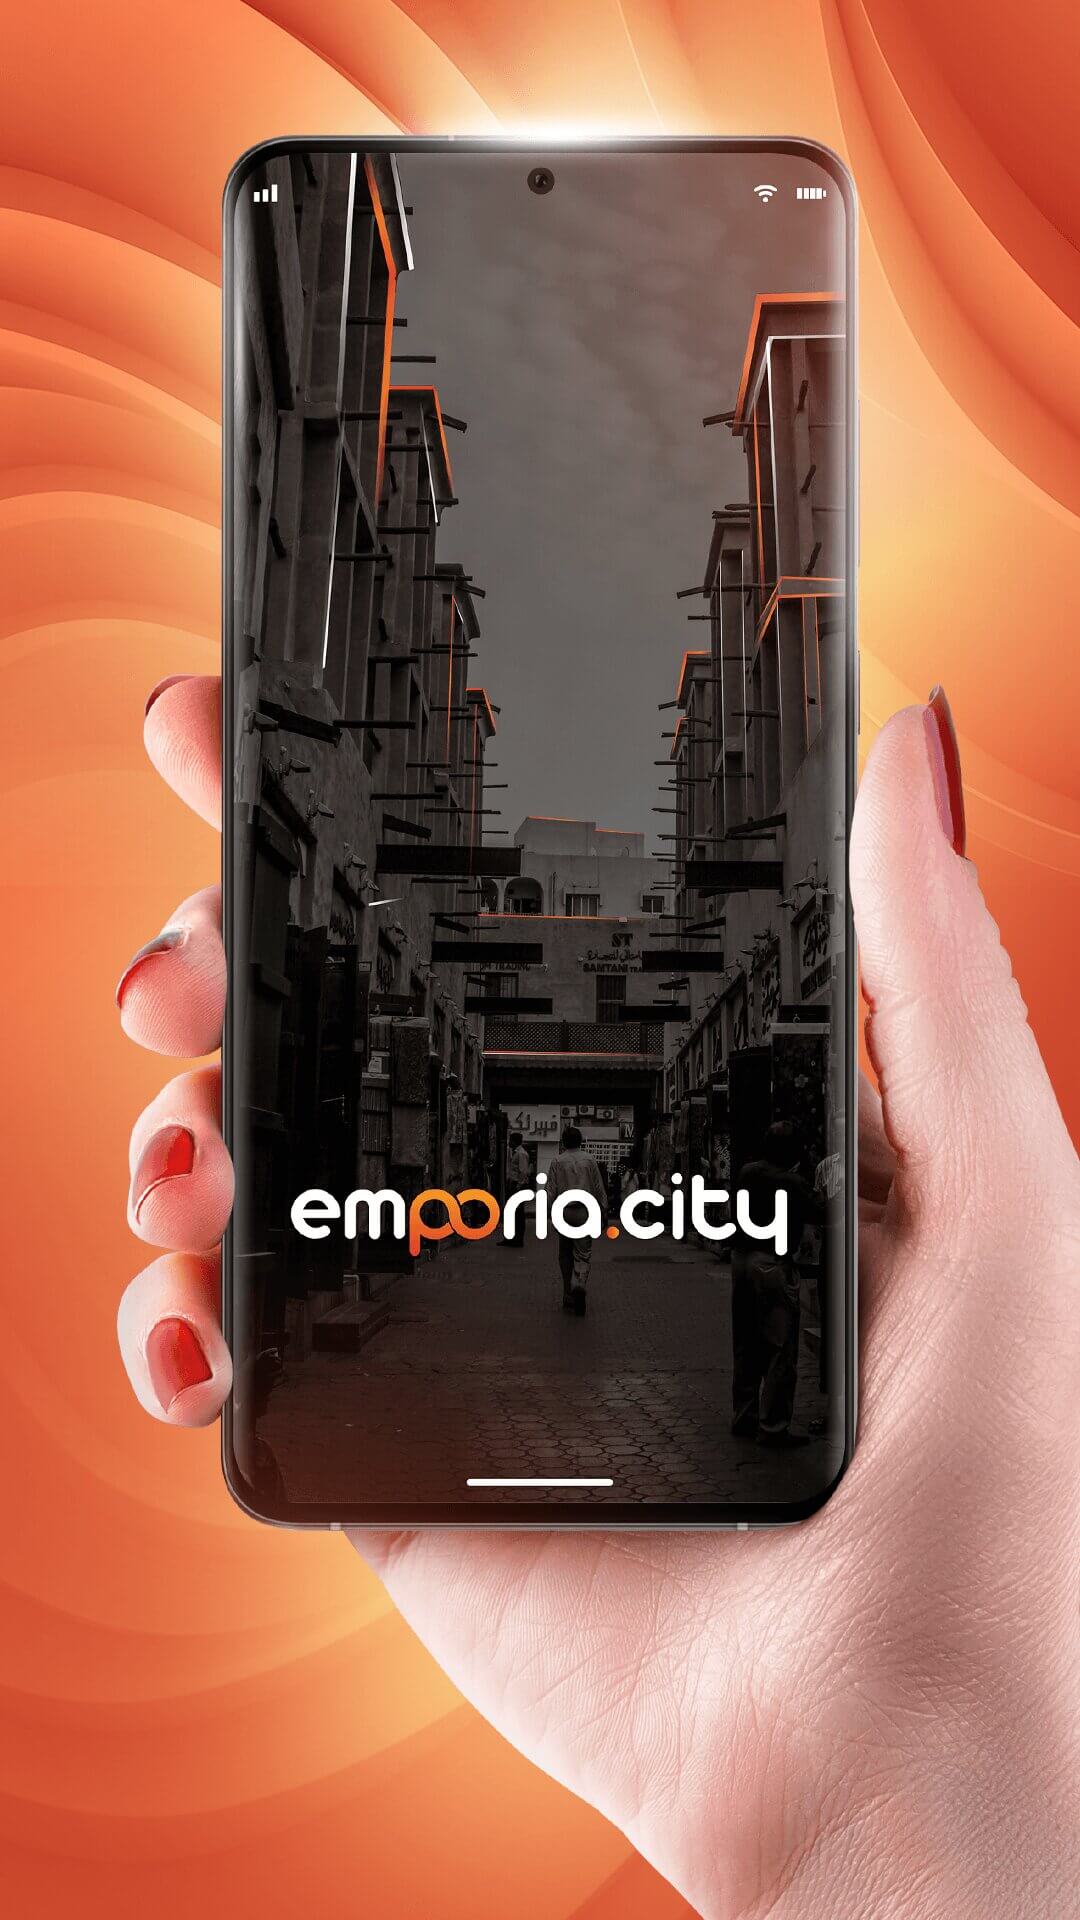 Screenshots showcasing emporia.city's features